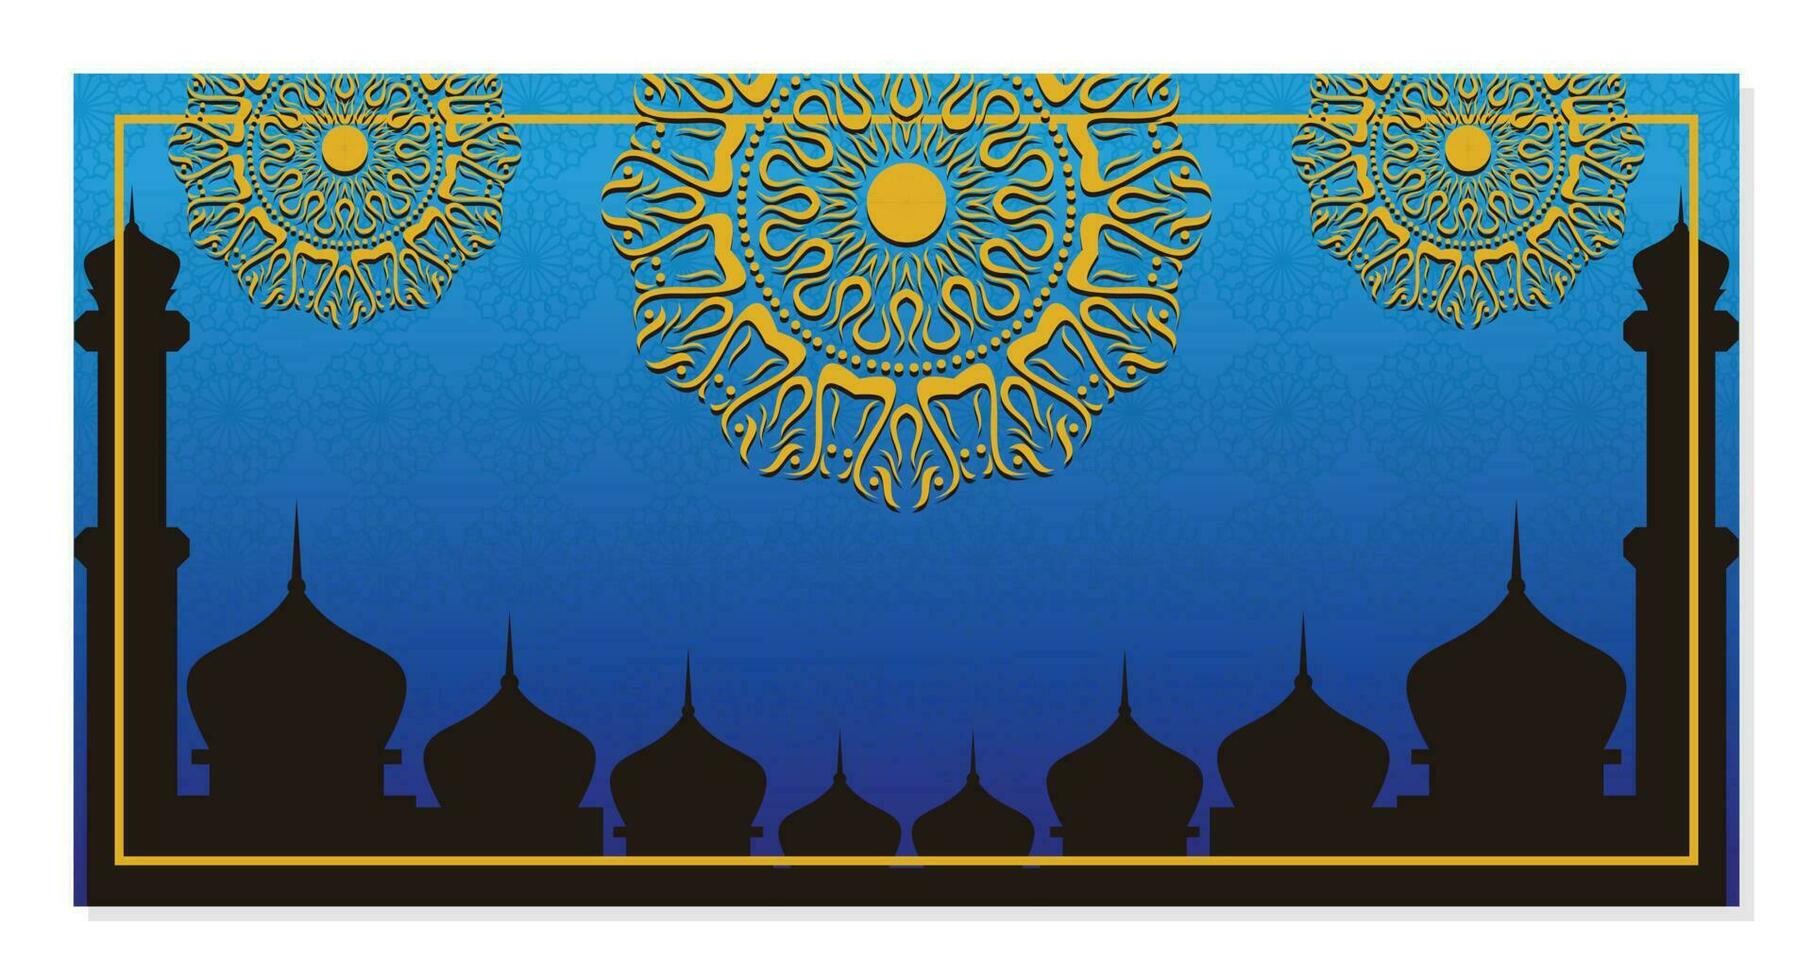 islamique arrière-plan, avec magnifique mandala ornement. vecteur modèle pour bannières, salutation cartes pour islamique vacances.